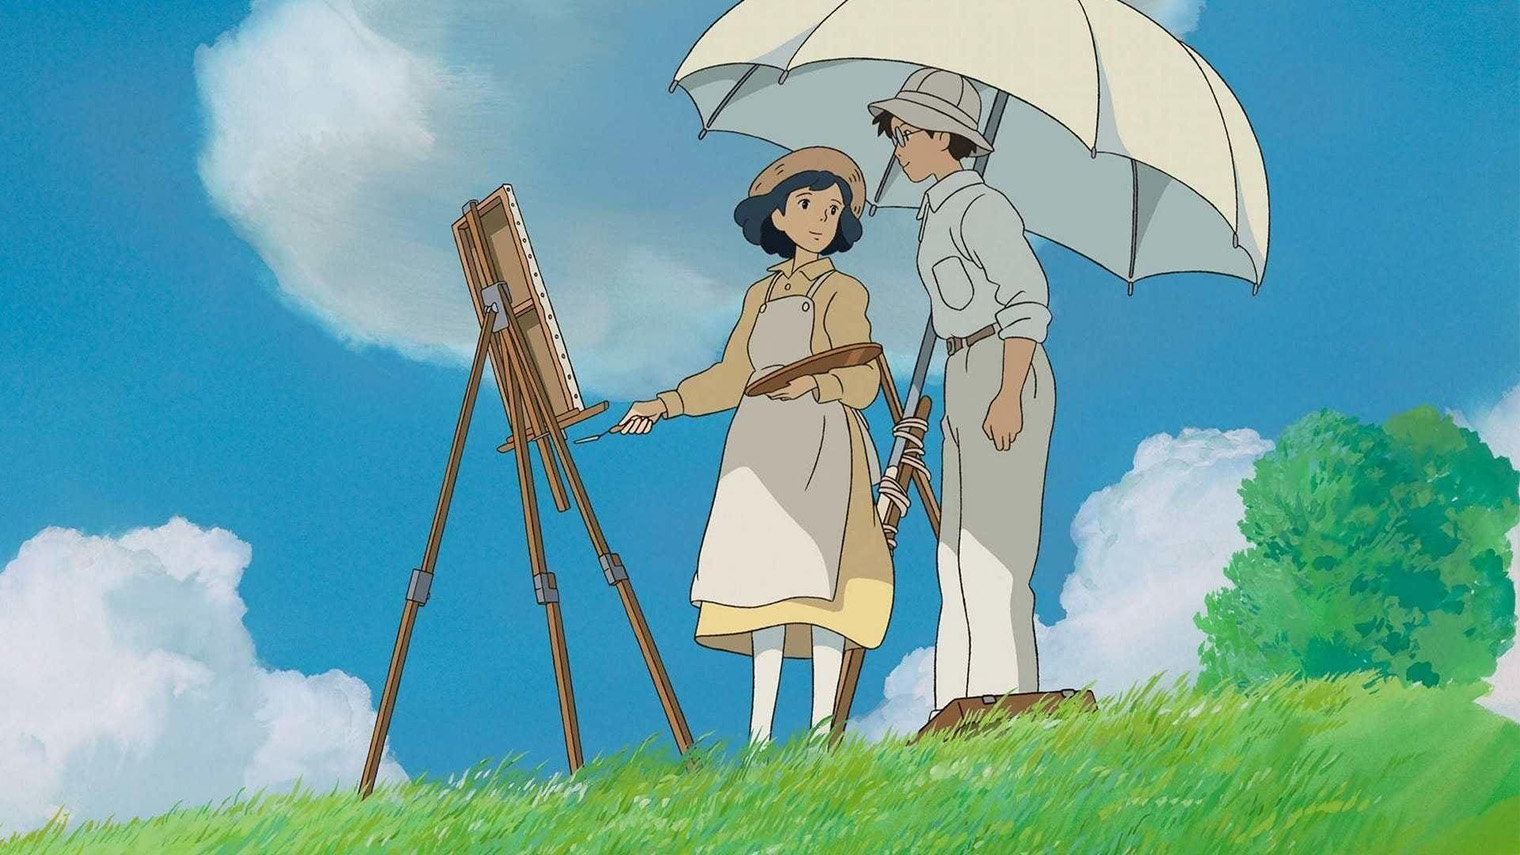 На Венецианском кинофестивале в 2013 году Хаяо Миядзаки объявил, что «Ветер крепчает» станет его последним фильмом. Позже он изменил мнение: поклонников японского режиссера ждет как минимум еще одна картина — «Как поживаете?». Источник: Studio Ghibli